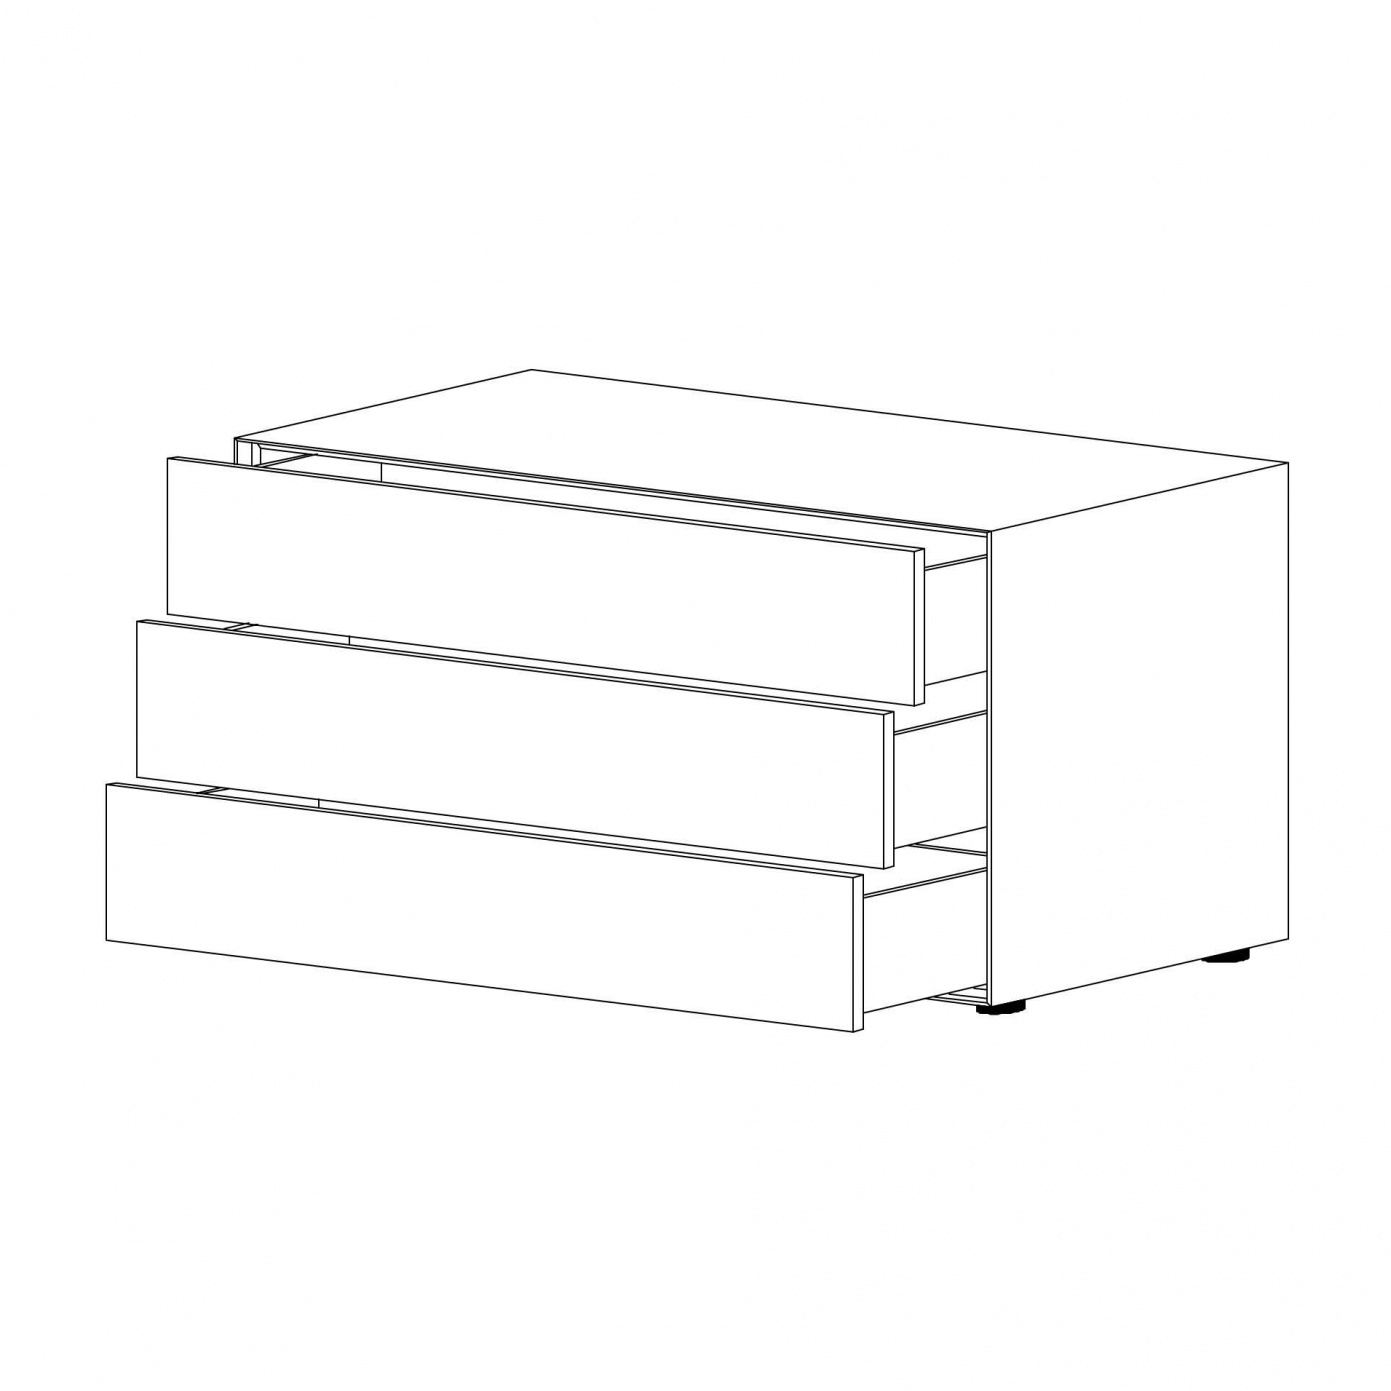 Piure - Nex Pur Box Schubkastenbox/Kommode 120x75cm - weiß RAL 9016/MDF matt lackiert/mit Gleitfüße/3 Schubladen von Piure